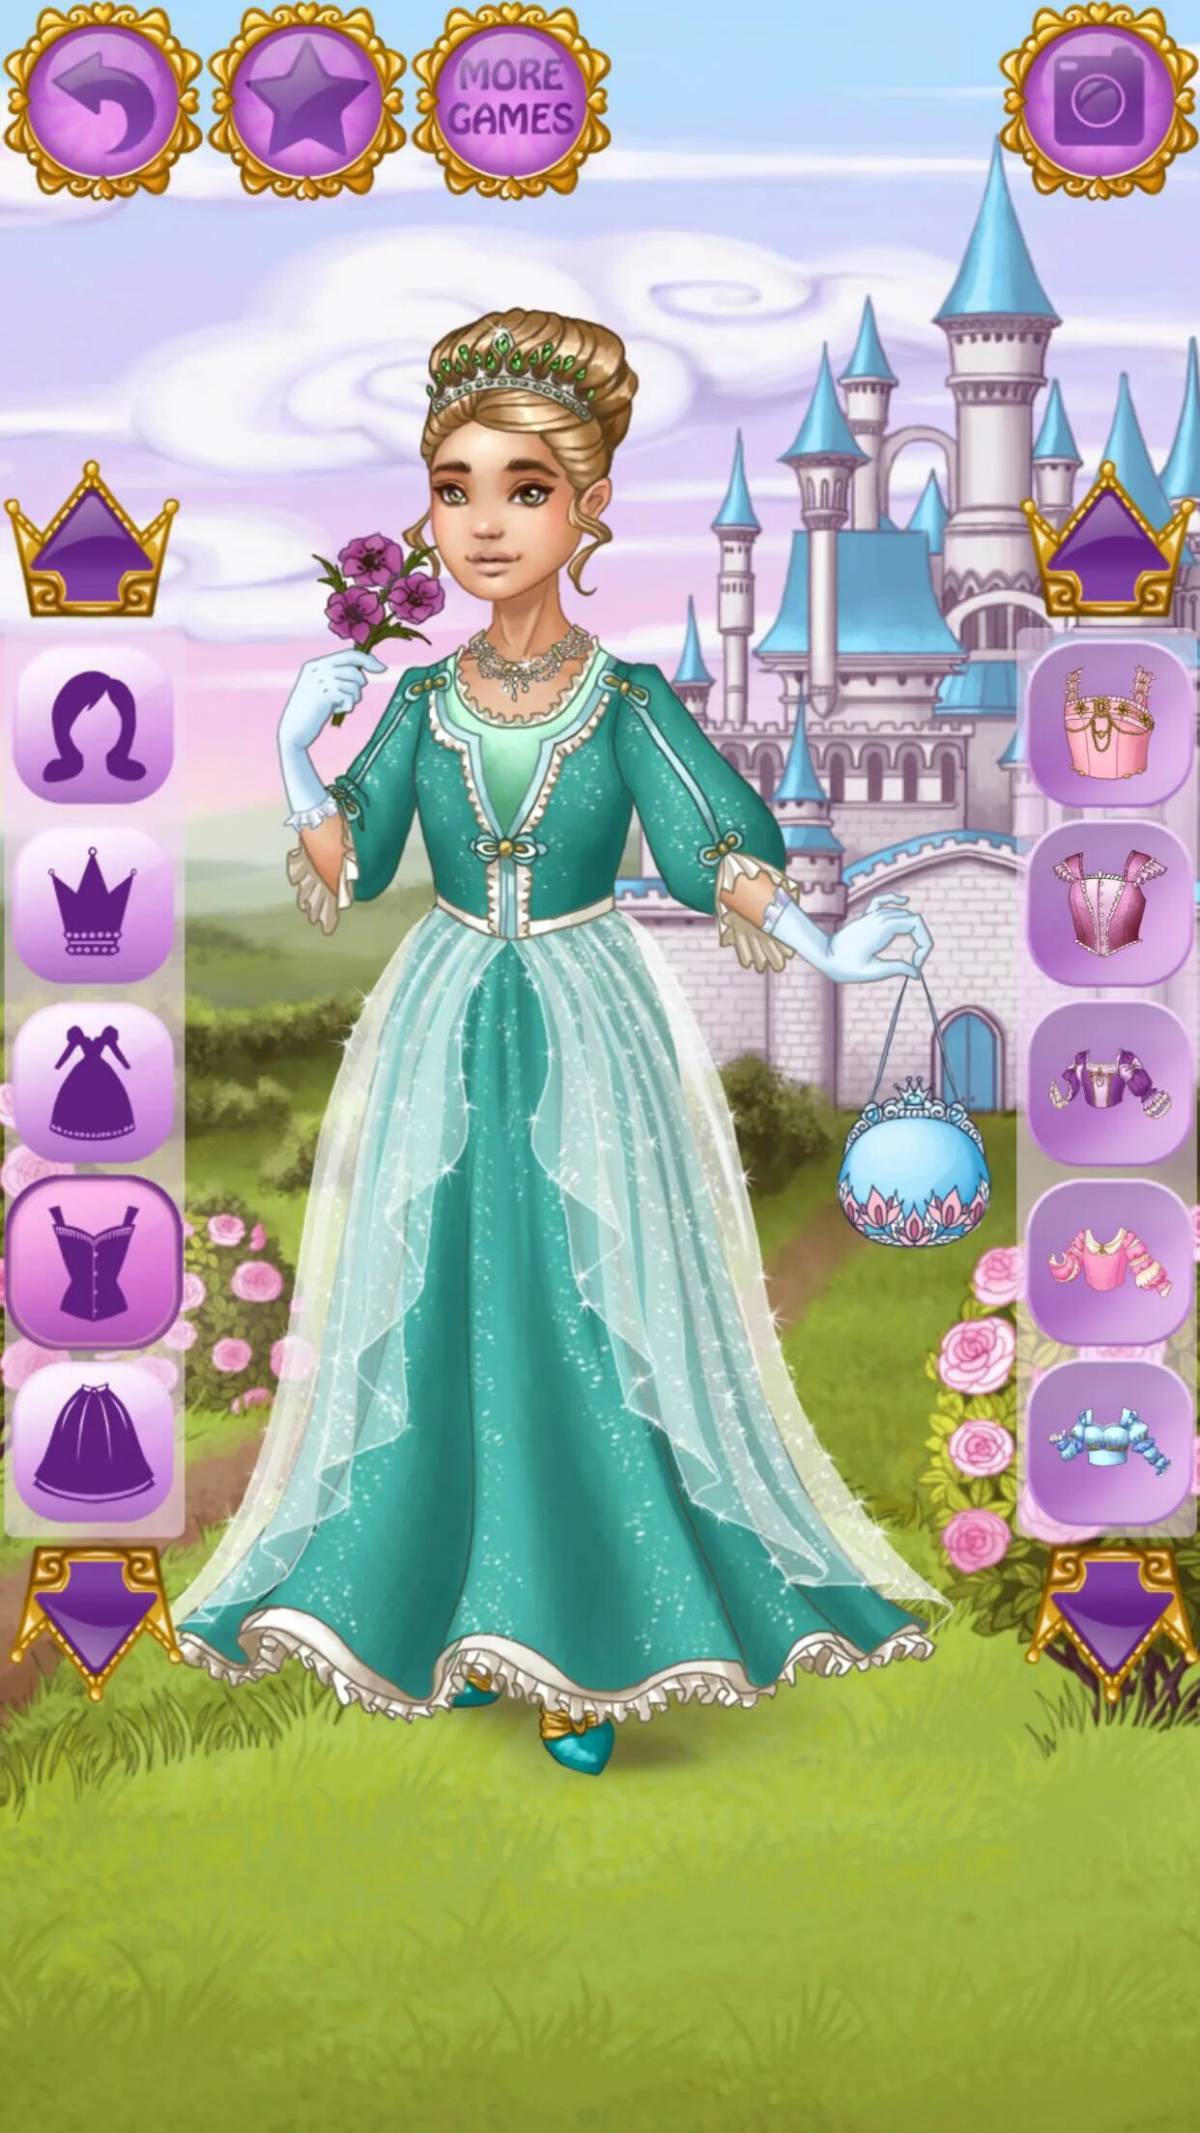 Игры принцесс много. Игра принцессы королевство для Золушки. Time Princess игра. Одевалки для девочек принцессы. Принцесса Казуальные игры.